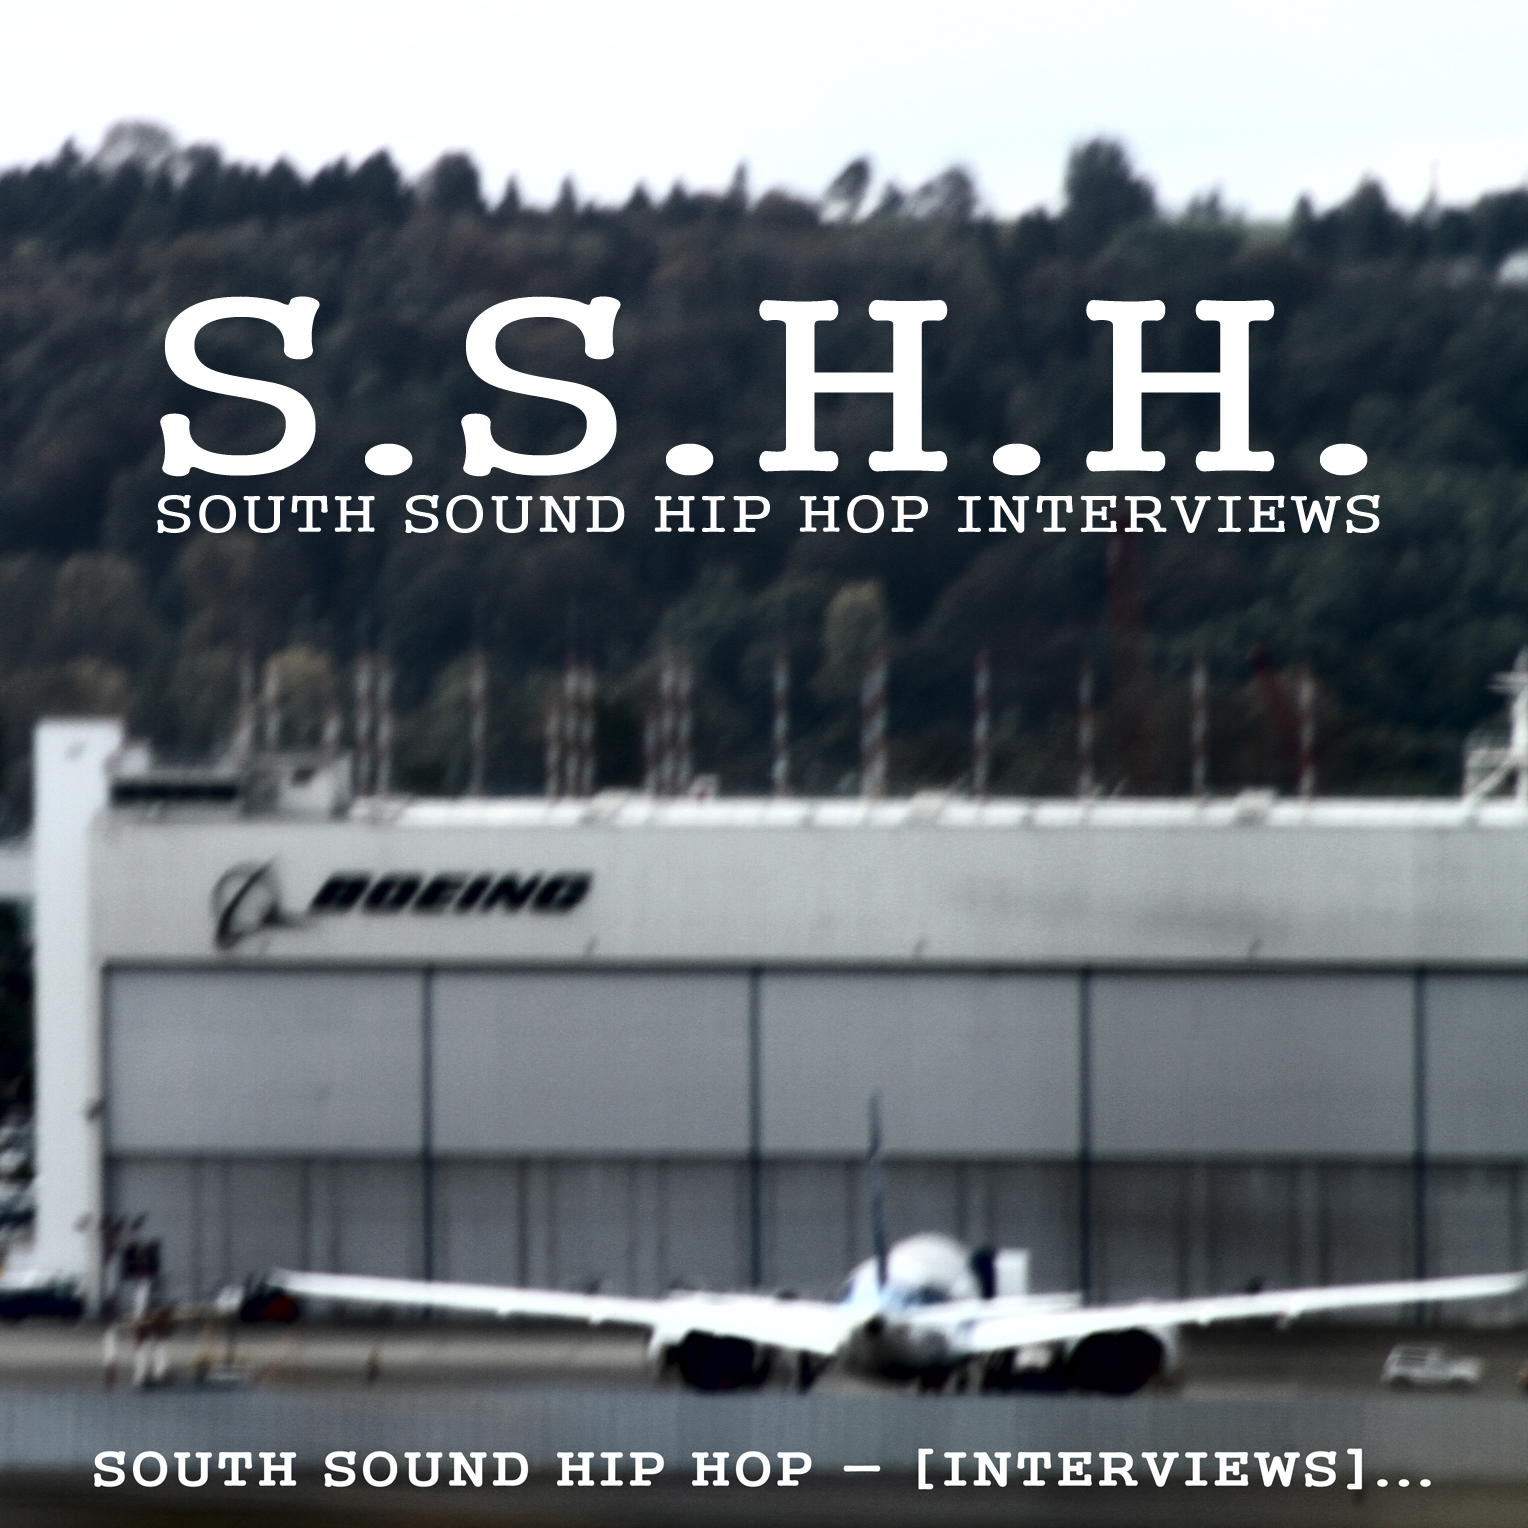 South Sound Hip Hop